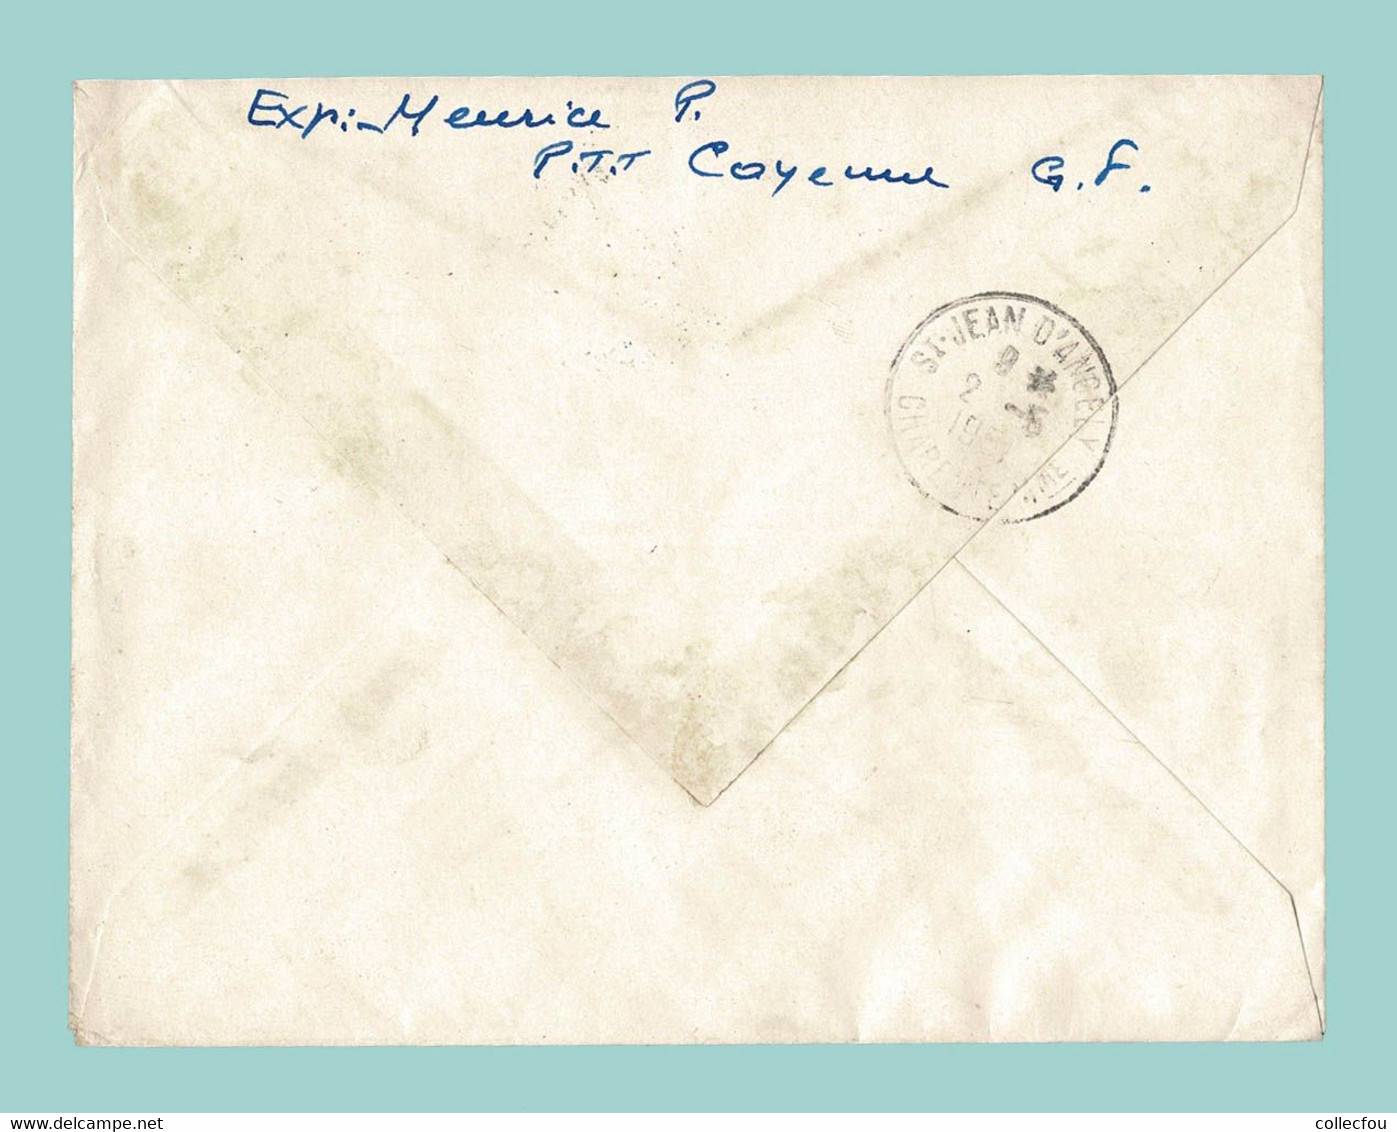 1951. Enveloppe Affranchie Lettre Recommandée Par AVION De CAYENNE, GUYANE FRANÇAISE à 17 St JEAN D'ANGÉLY - Lettres & Documents